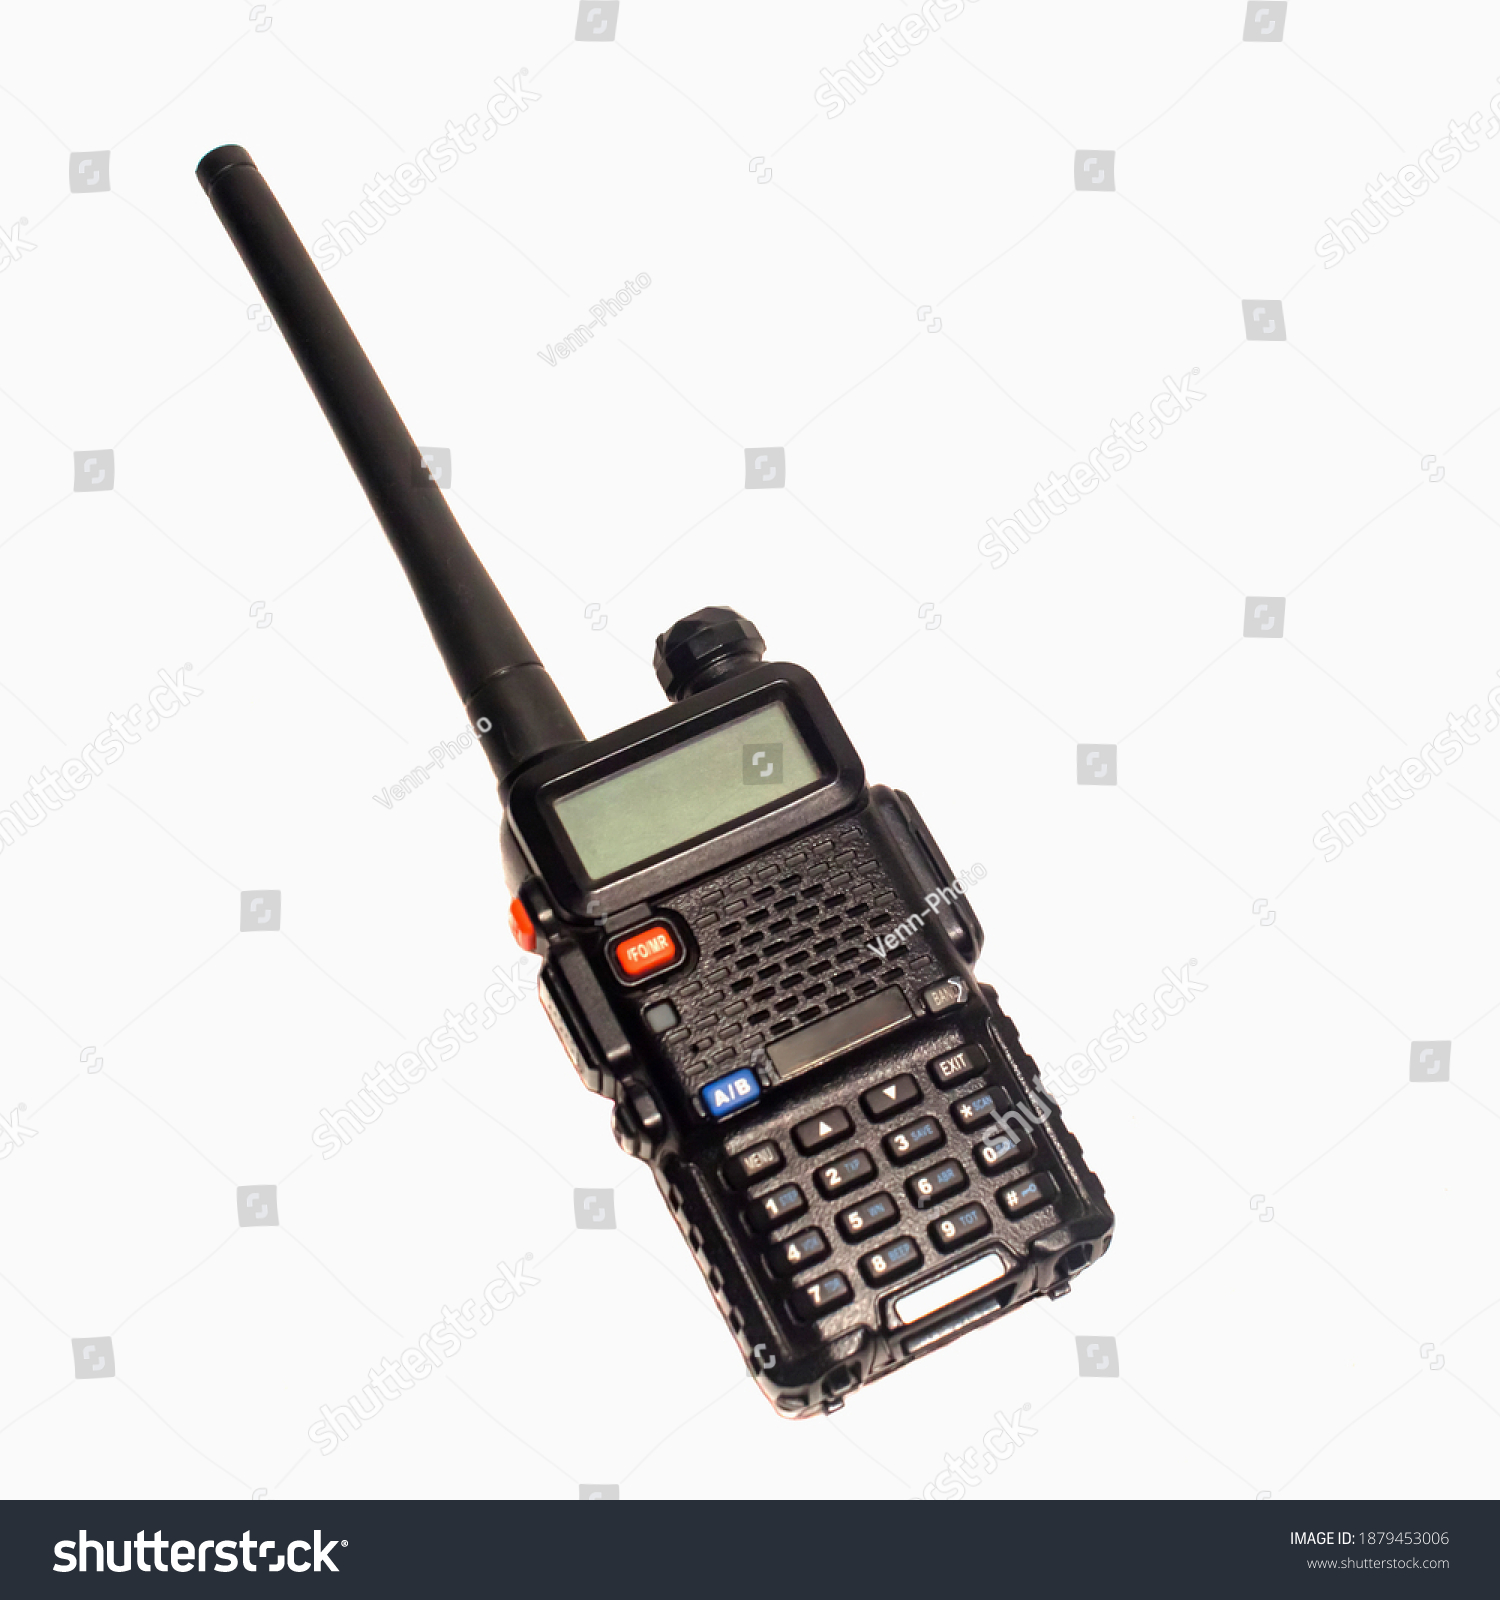 Black portable radio transmitter isolated on white background #1879453006